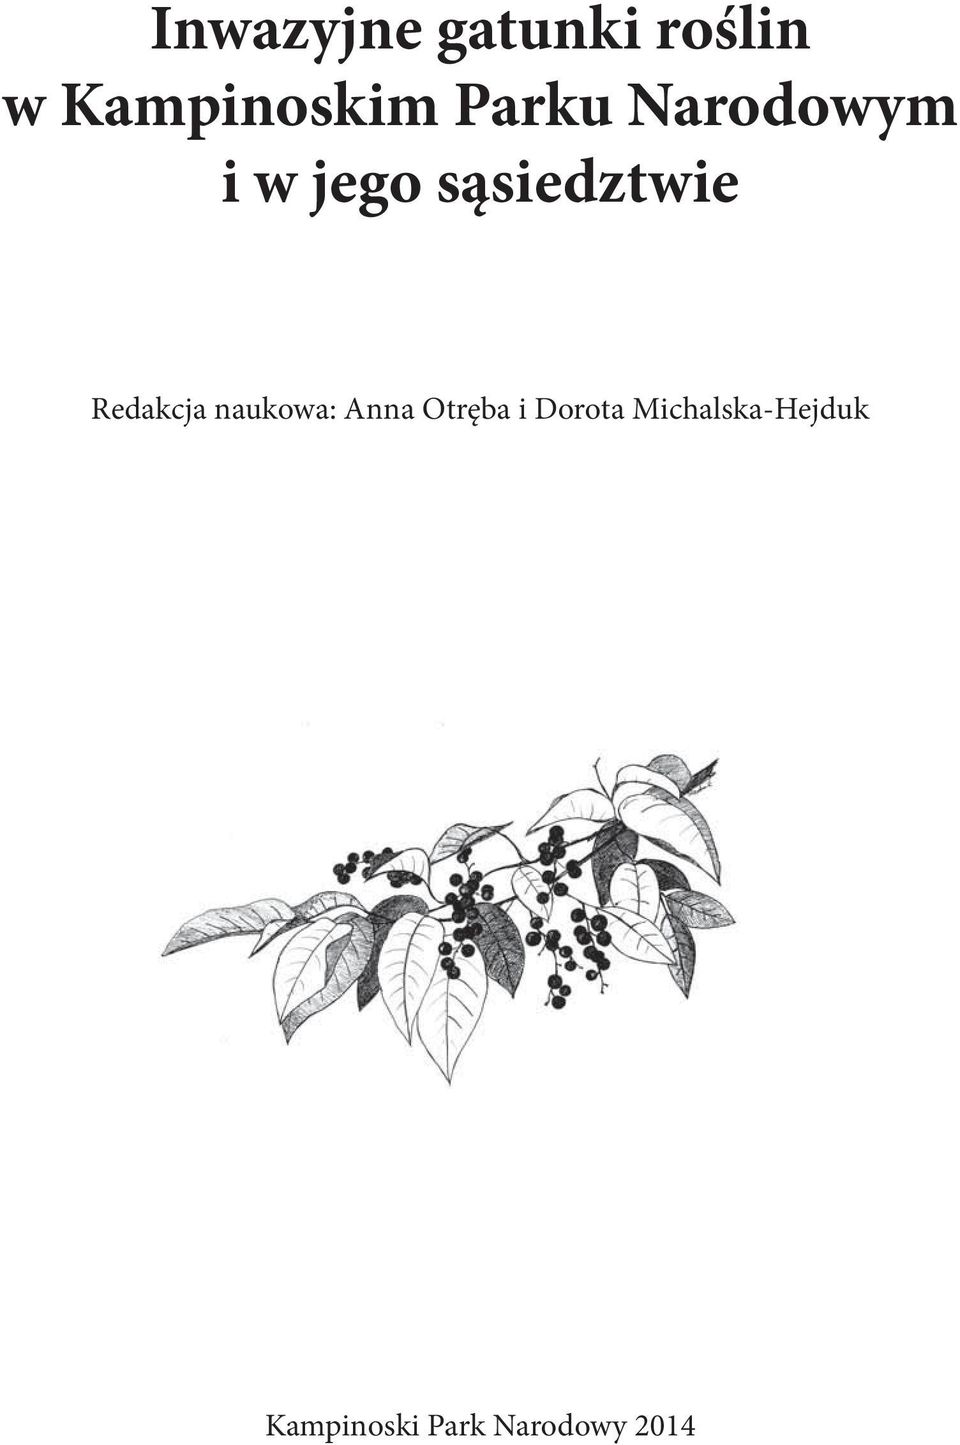 Redakcja naukowa: Anna Otręba i Dorota